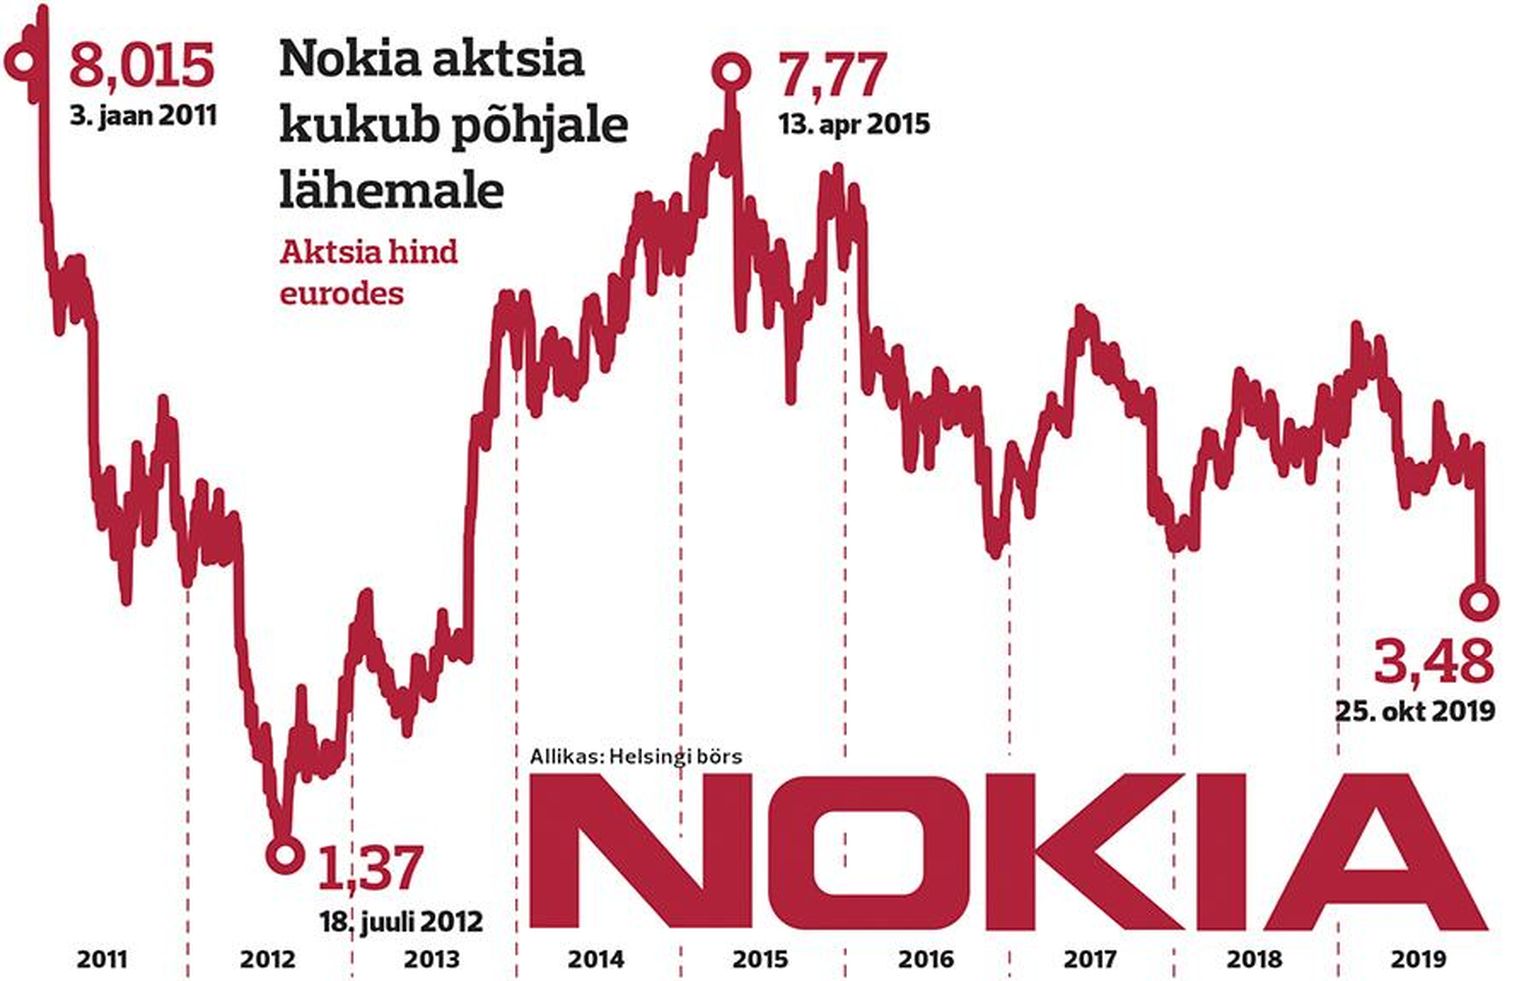 Nokia aktsia